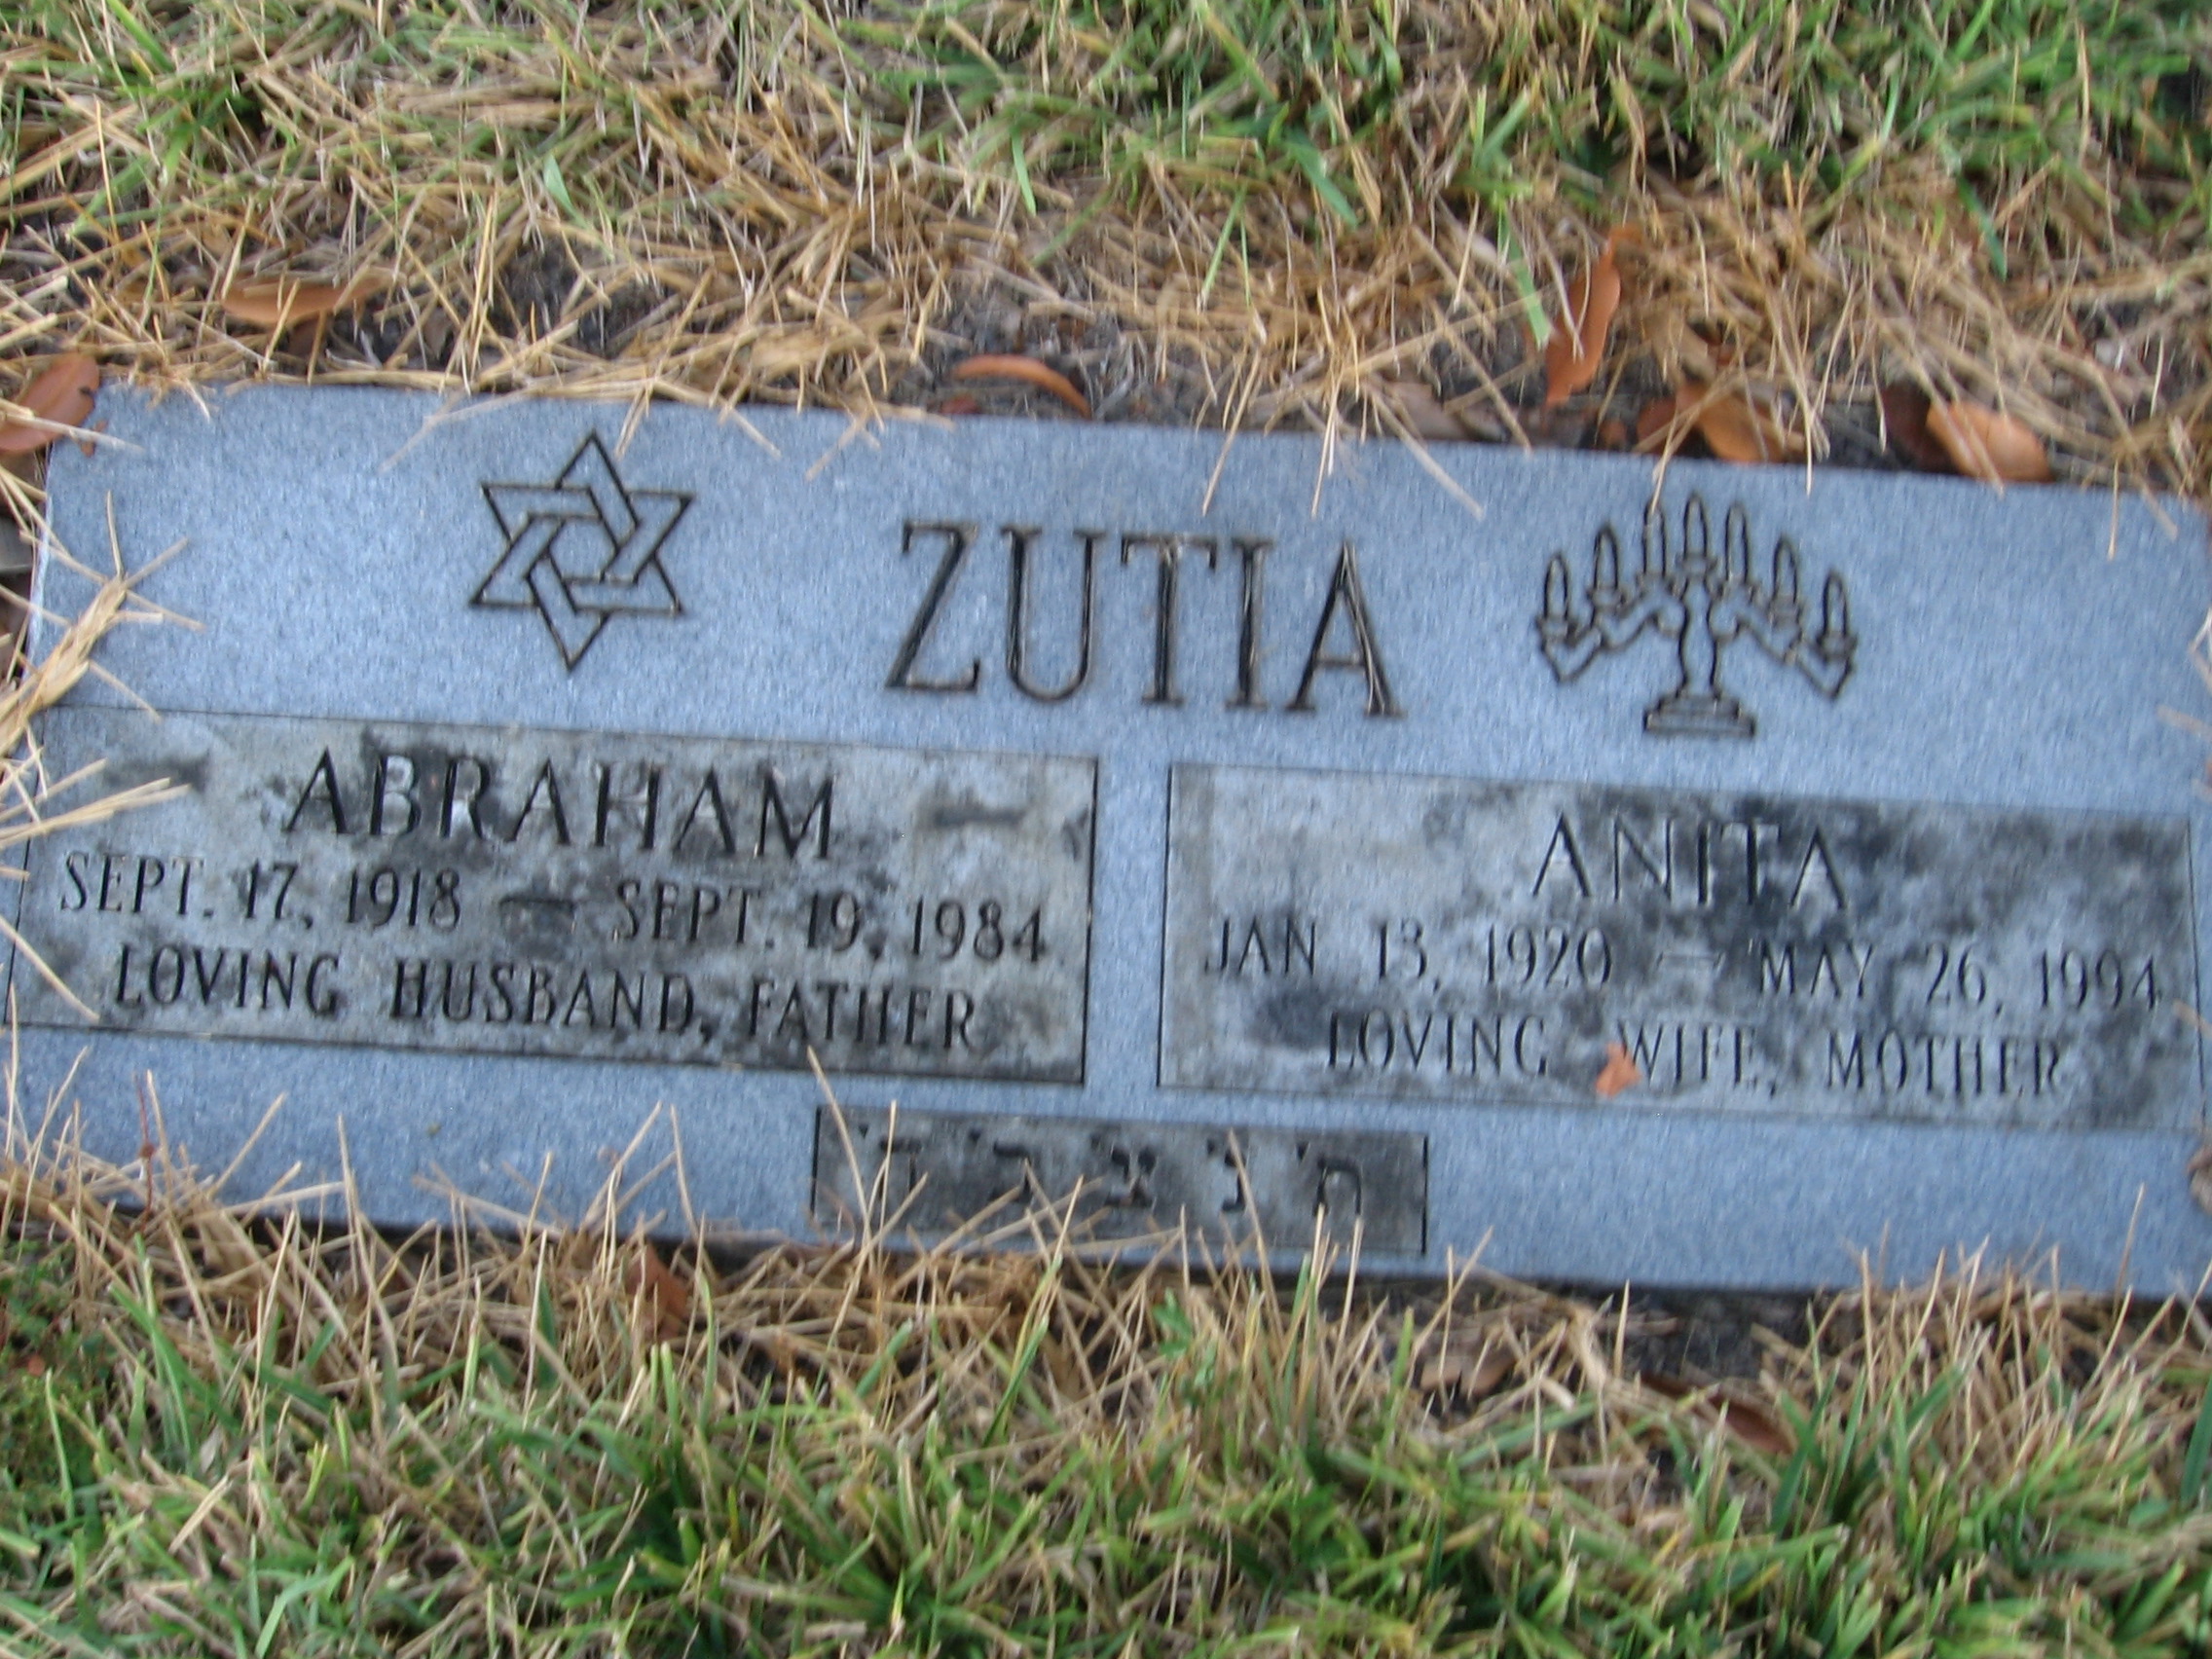 Anita Zutia